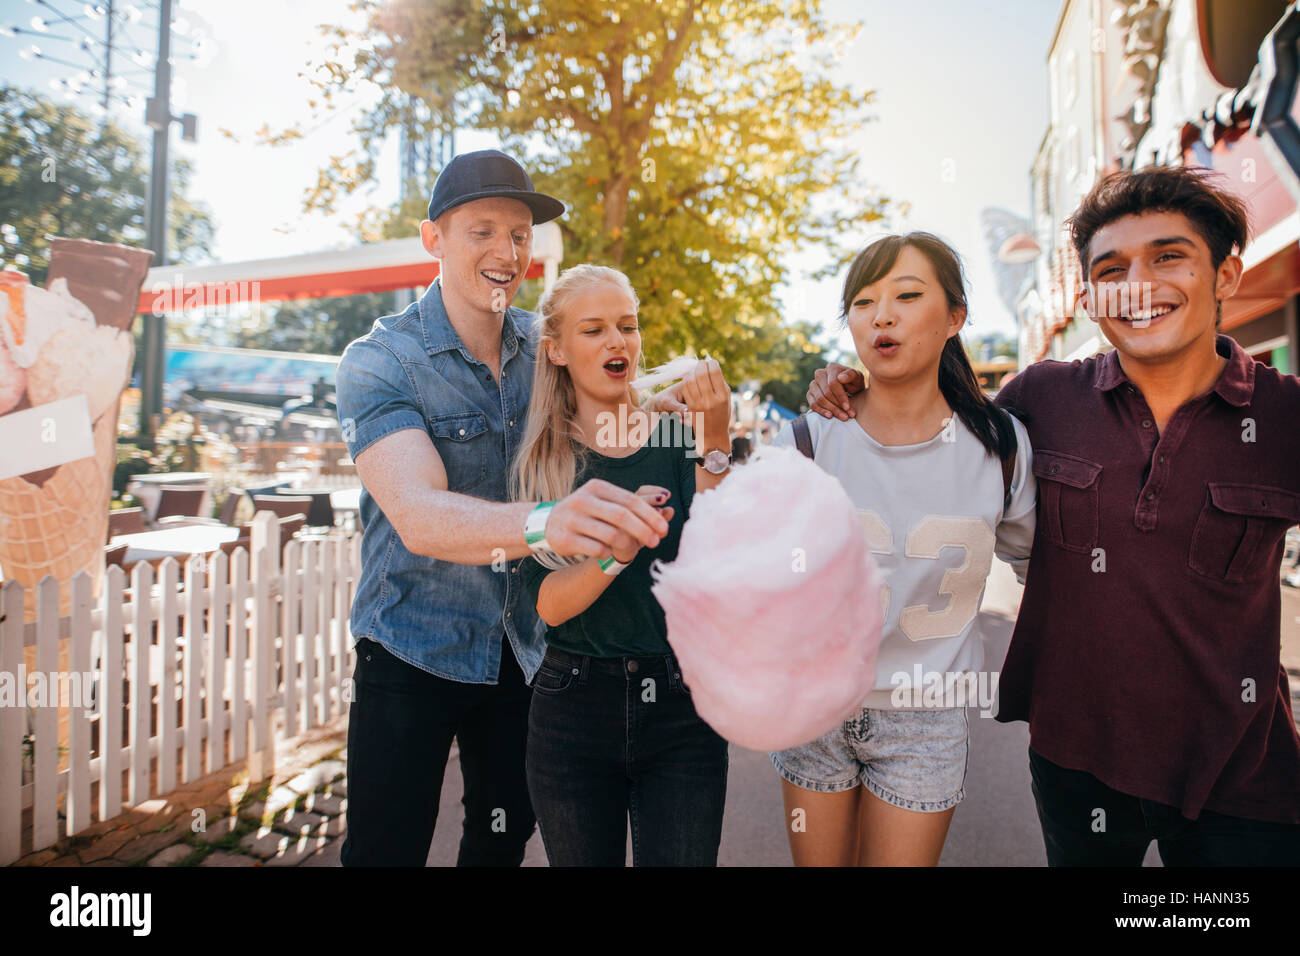 Gruppe von Freunden essen Zuckerwatte im Vergnügungspark. Junge Männer und Frauen teilen Baumwolle Zuckerwatte am Festplatz. Stockfoto